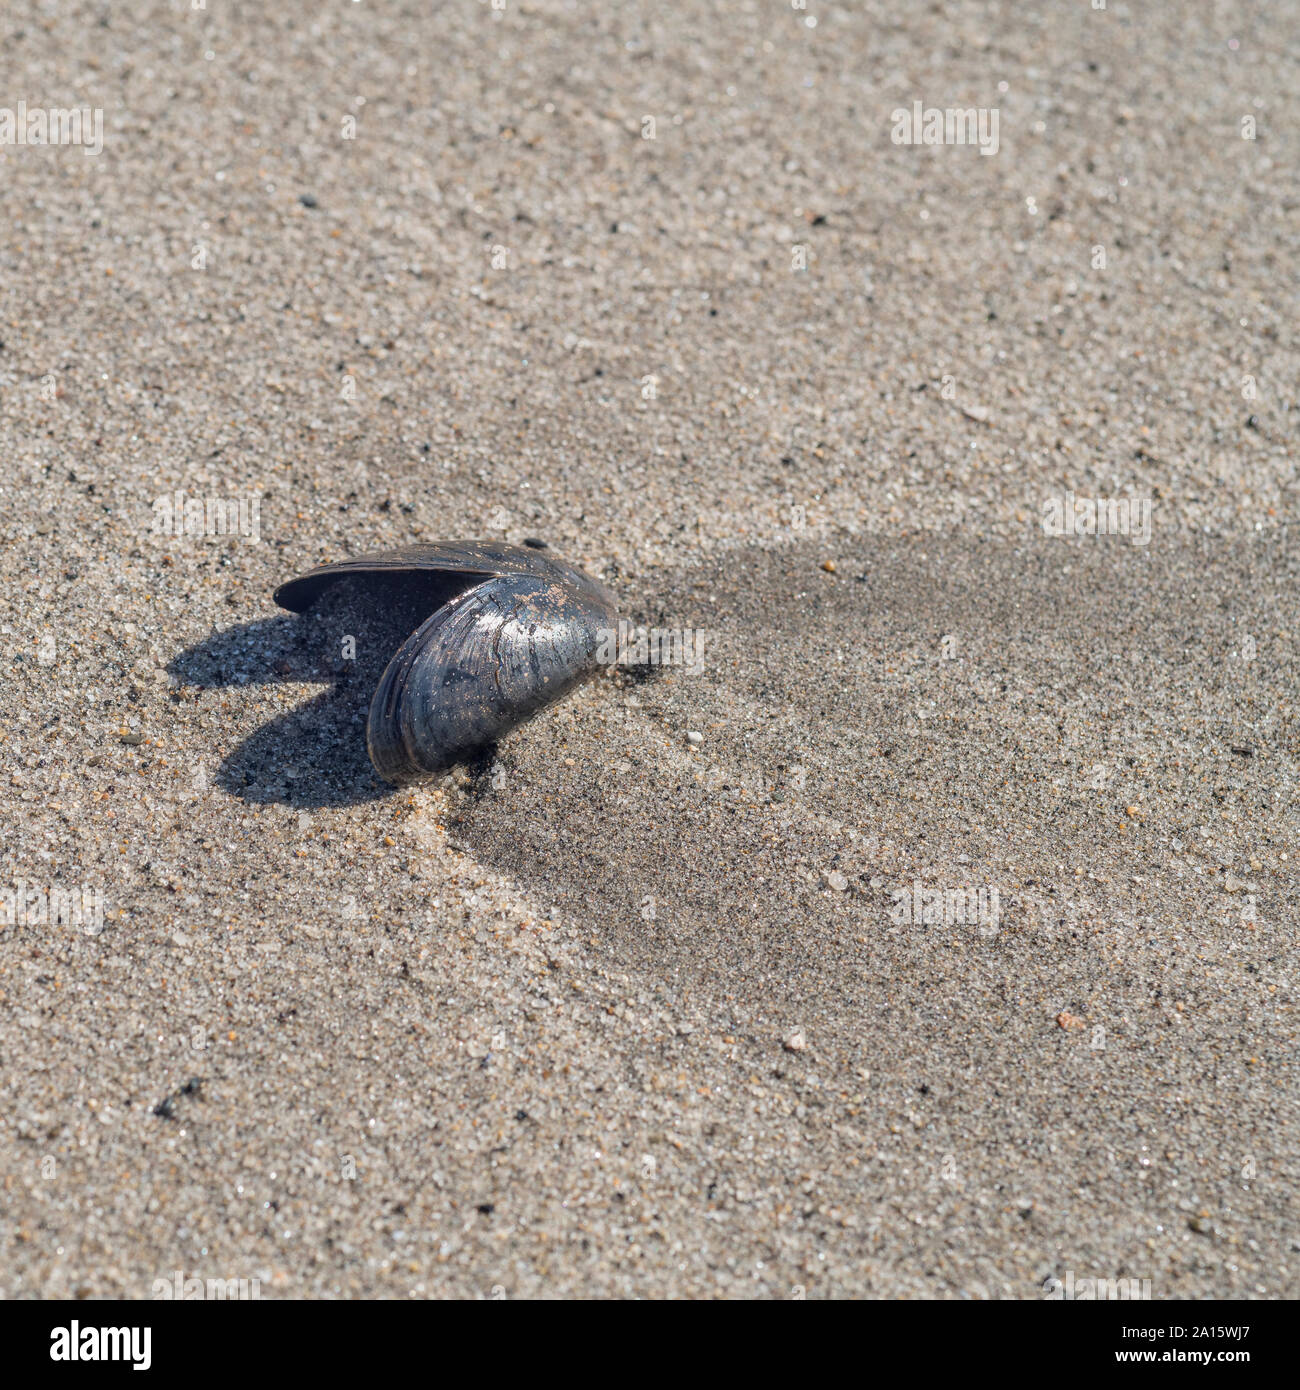 Gemeinsame Mussel/Mytilus edulis Seashell gewaschen an Land an einem Sandstrand in Cornwall. Isolierte shell, Isolation, einsam, allein, einsam. Stockfoto